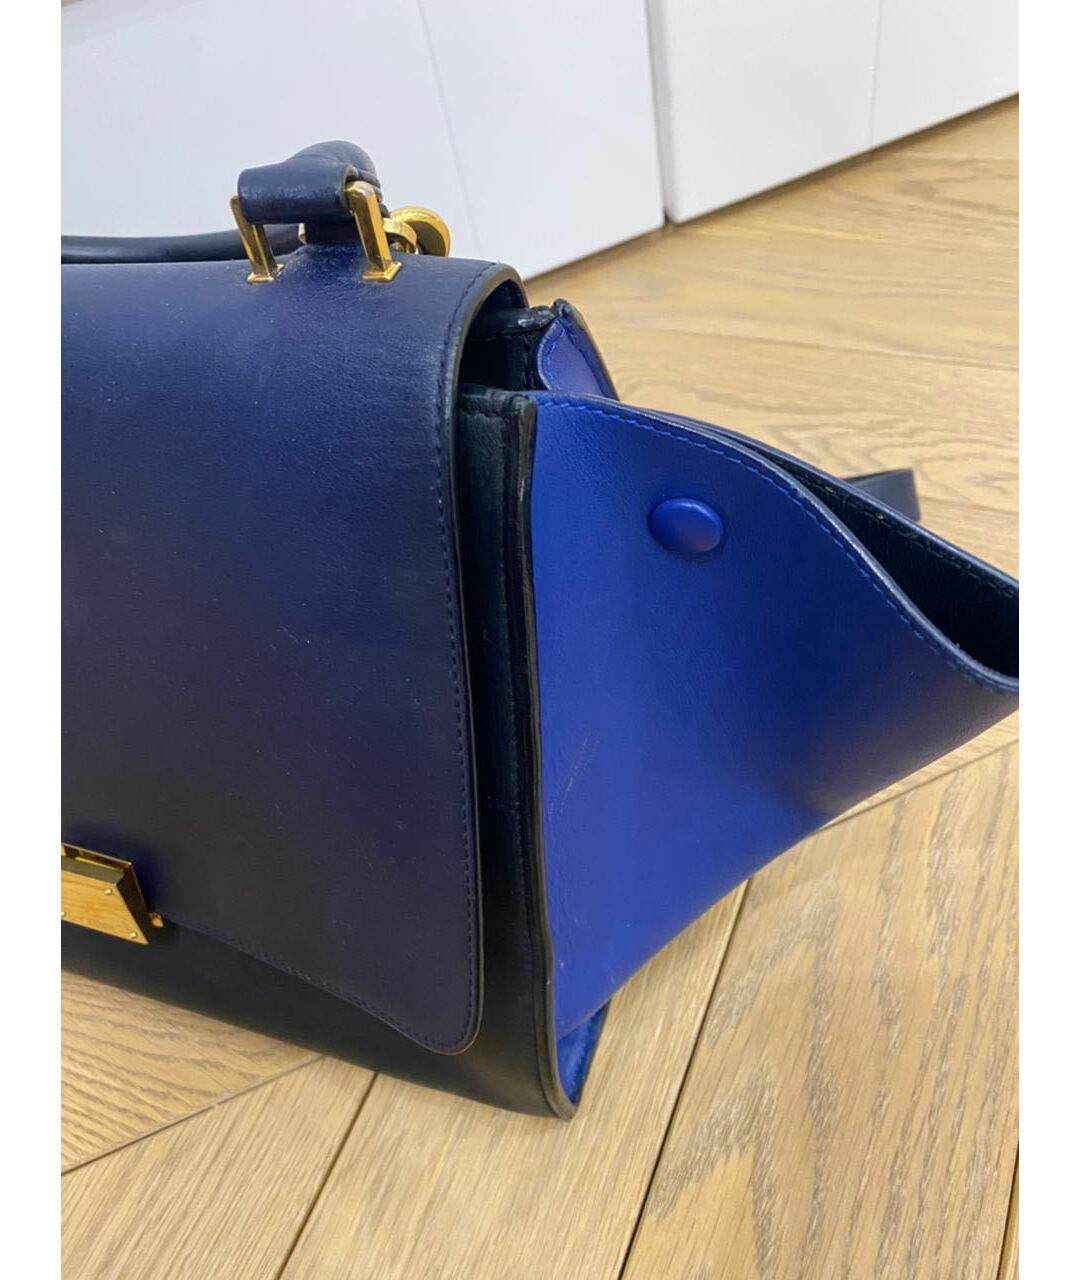 CELINE PRE-OWNED Синяя кожаная сумка тоут, фото 2